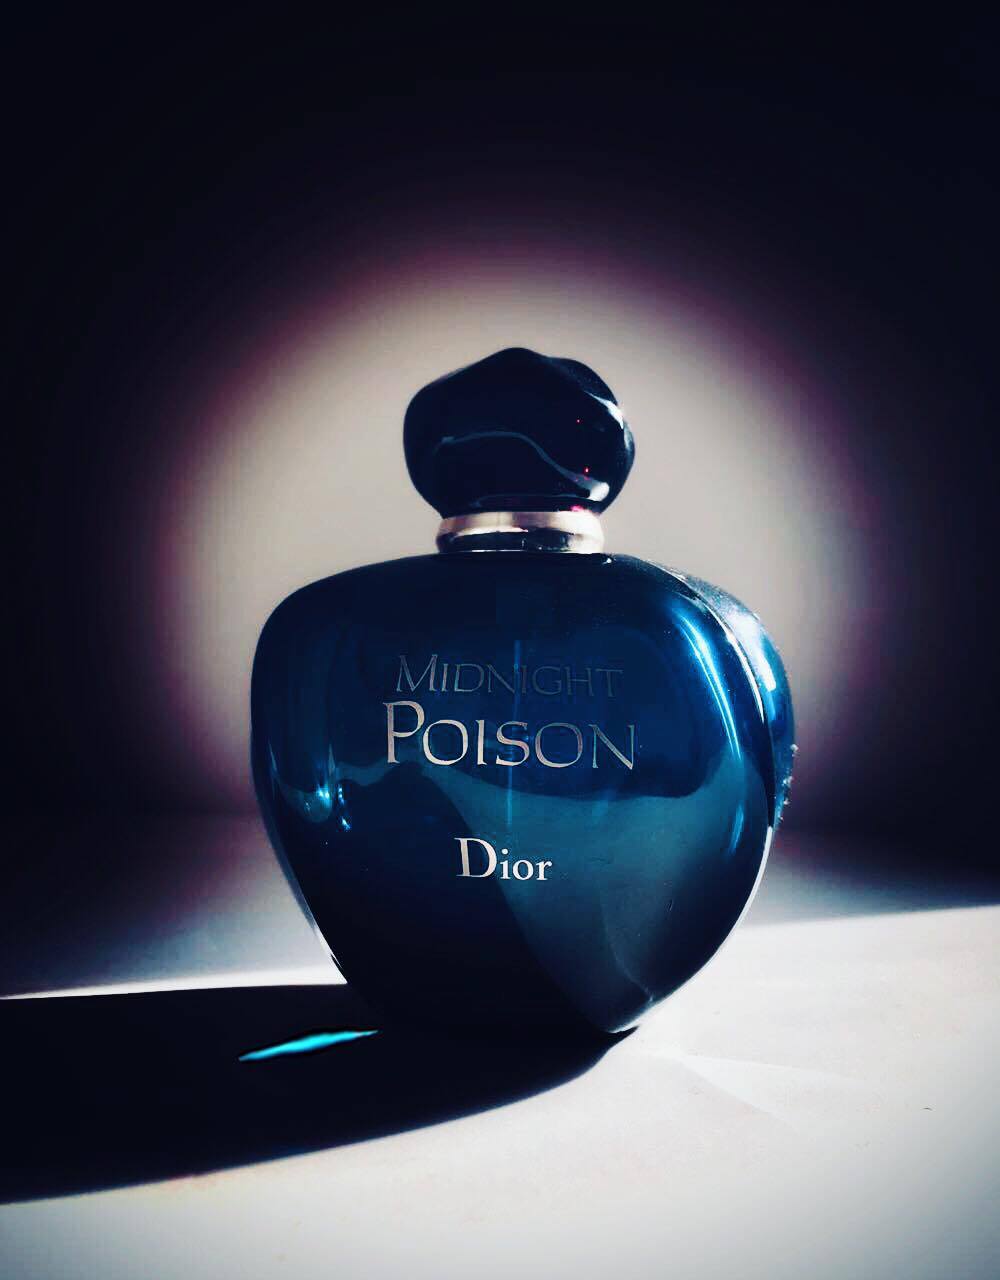 Миднайт пуазон. Dior Midnight Poison. Dior Poison ADV. Духи Midnight Poison.